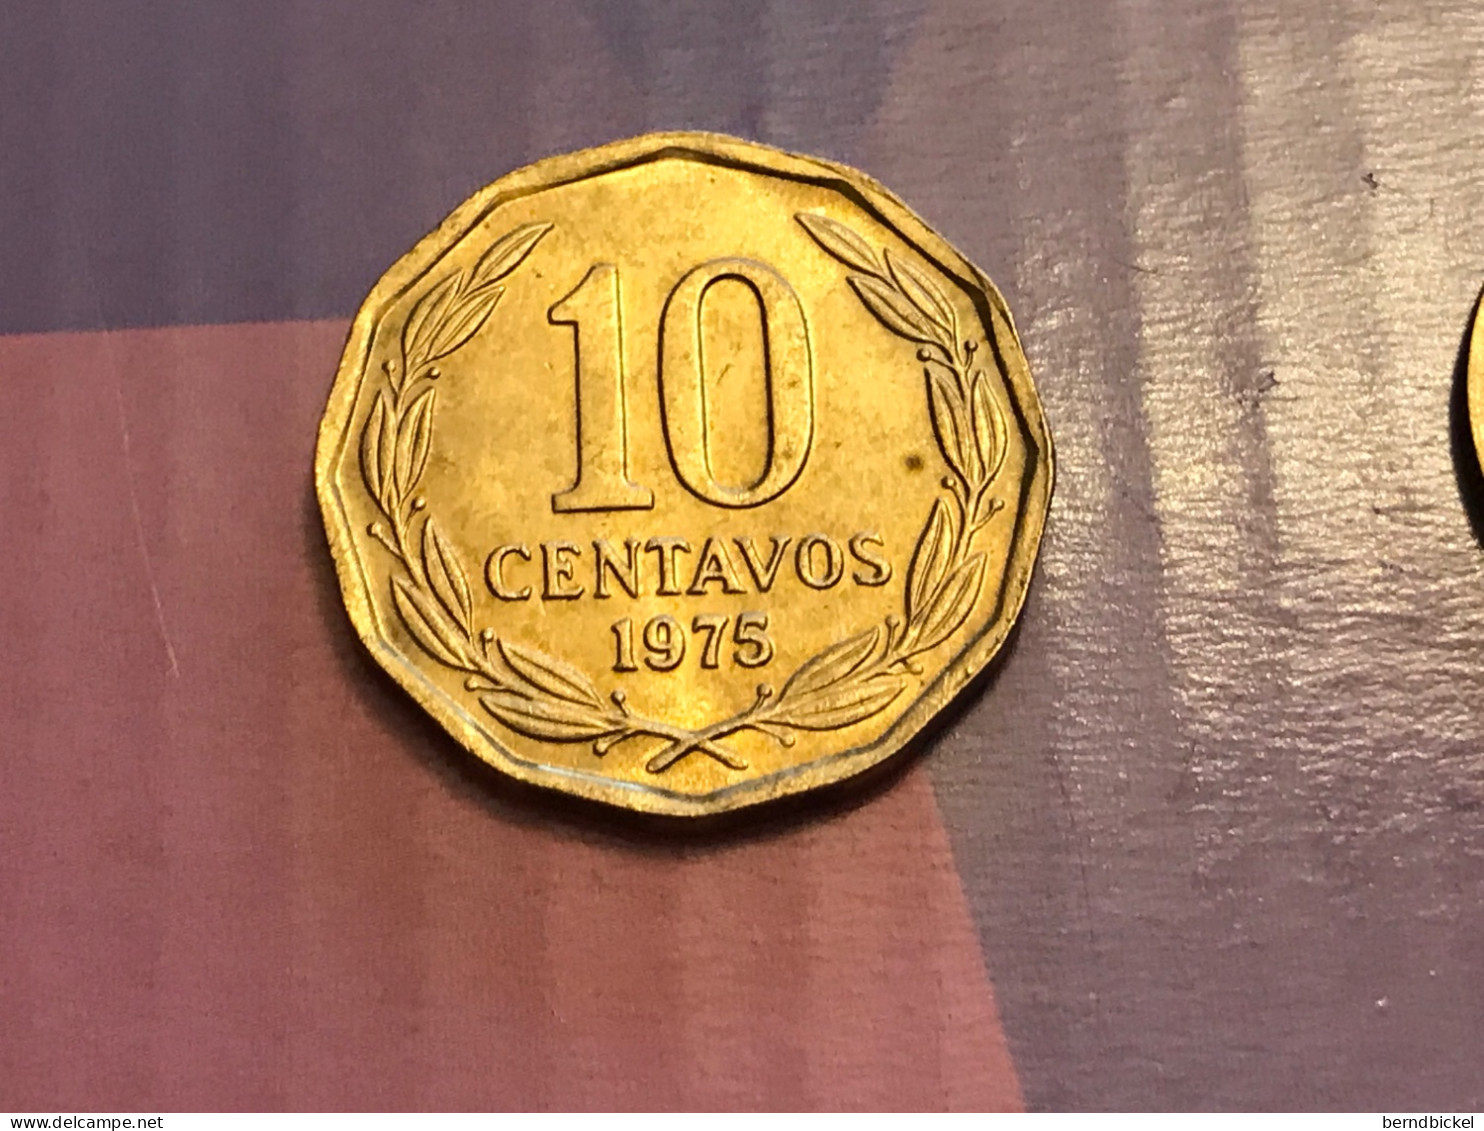 Münze Münzen Umlaufmünze Chile 10 Centavos 1975 - Chile